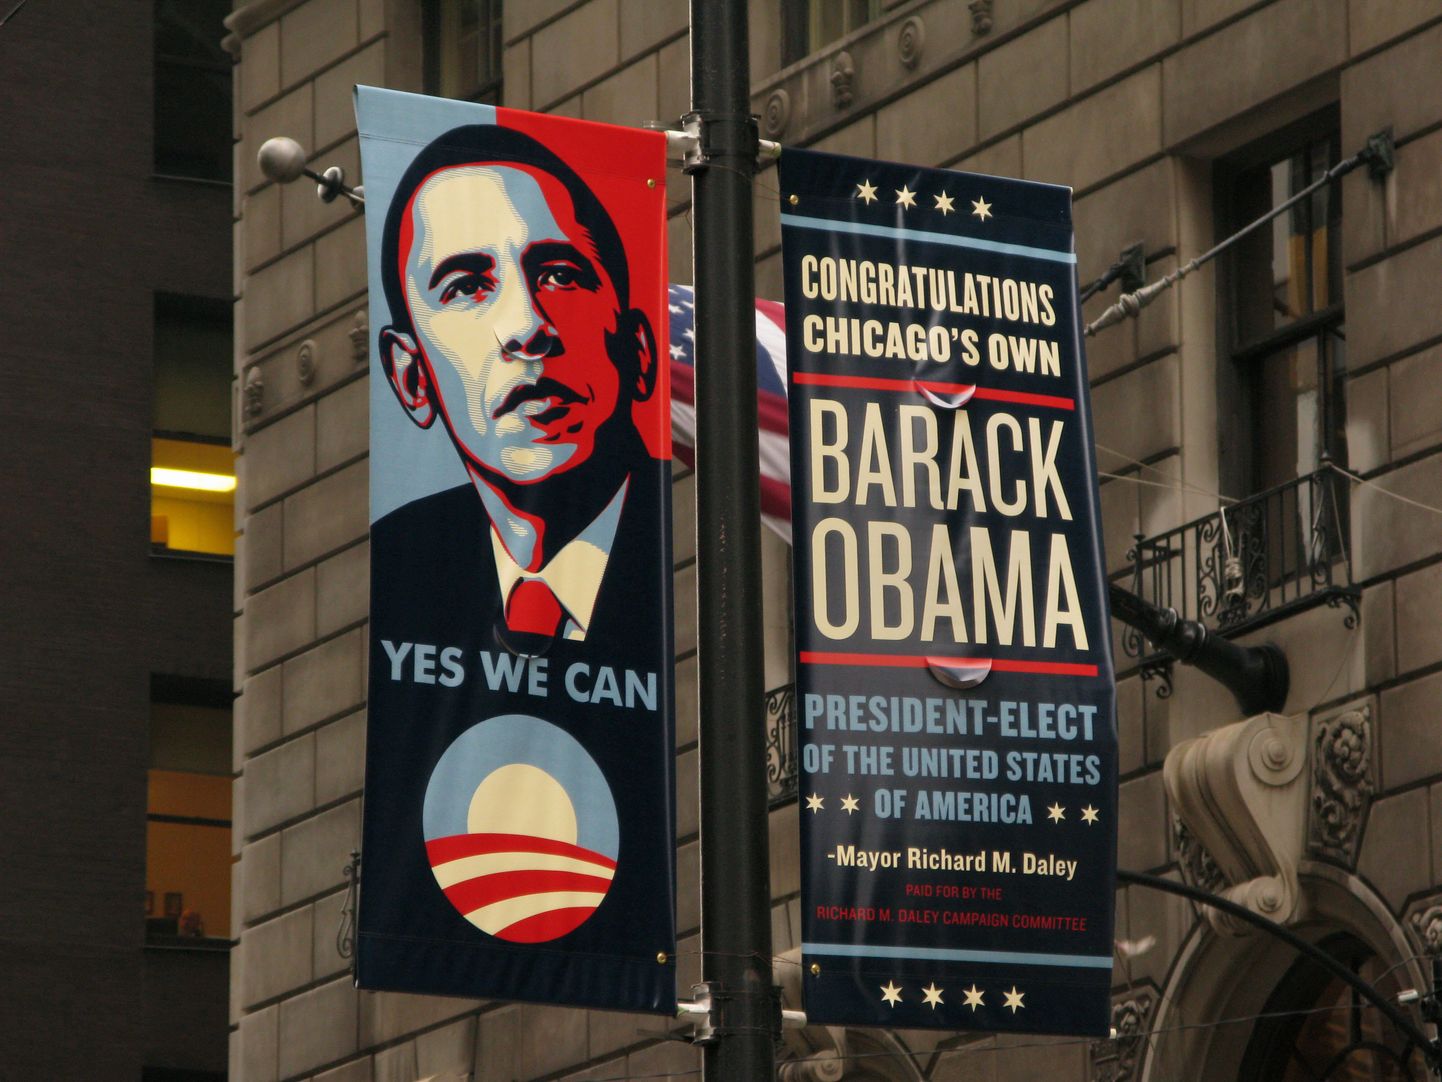 Barack Obama võitu Ühendriikide presidendivalimistel ülistav plakat Chicagos.